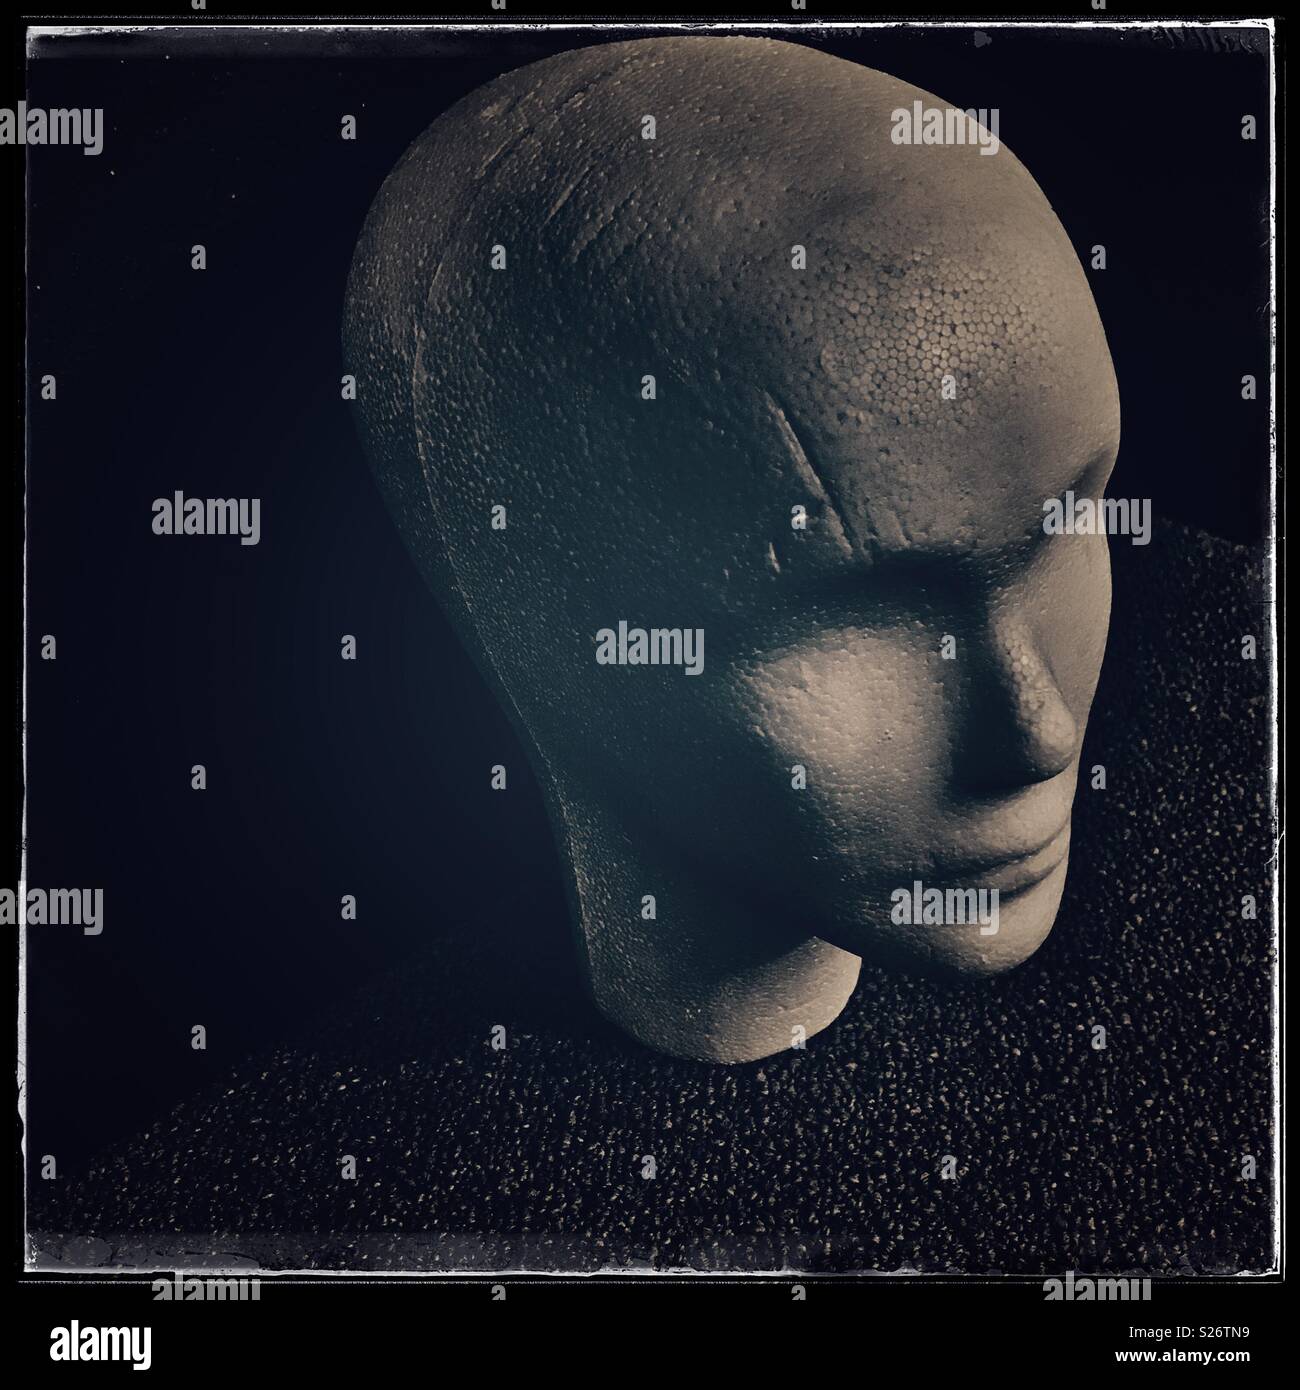 Polystyrene Skull, Mannequin Heads